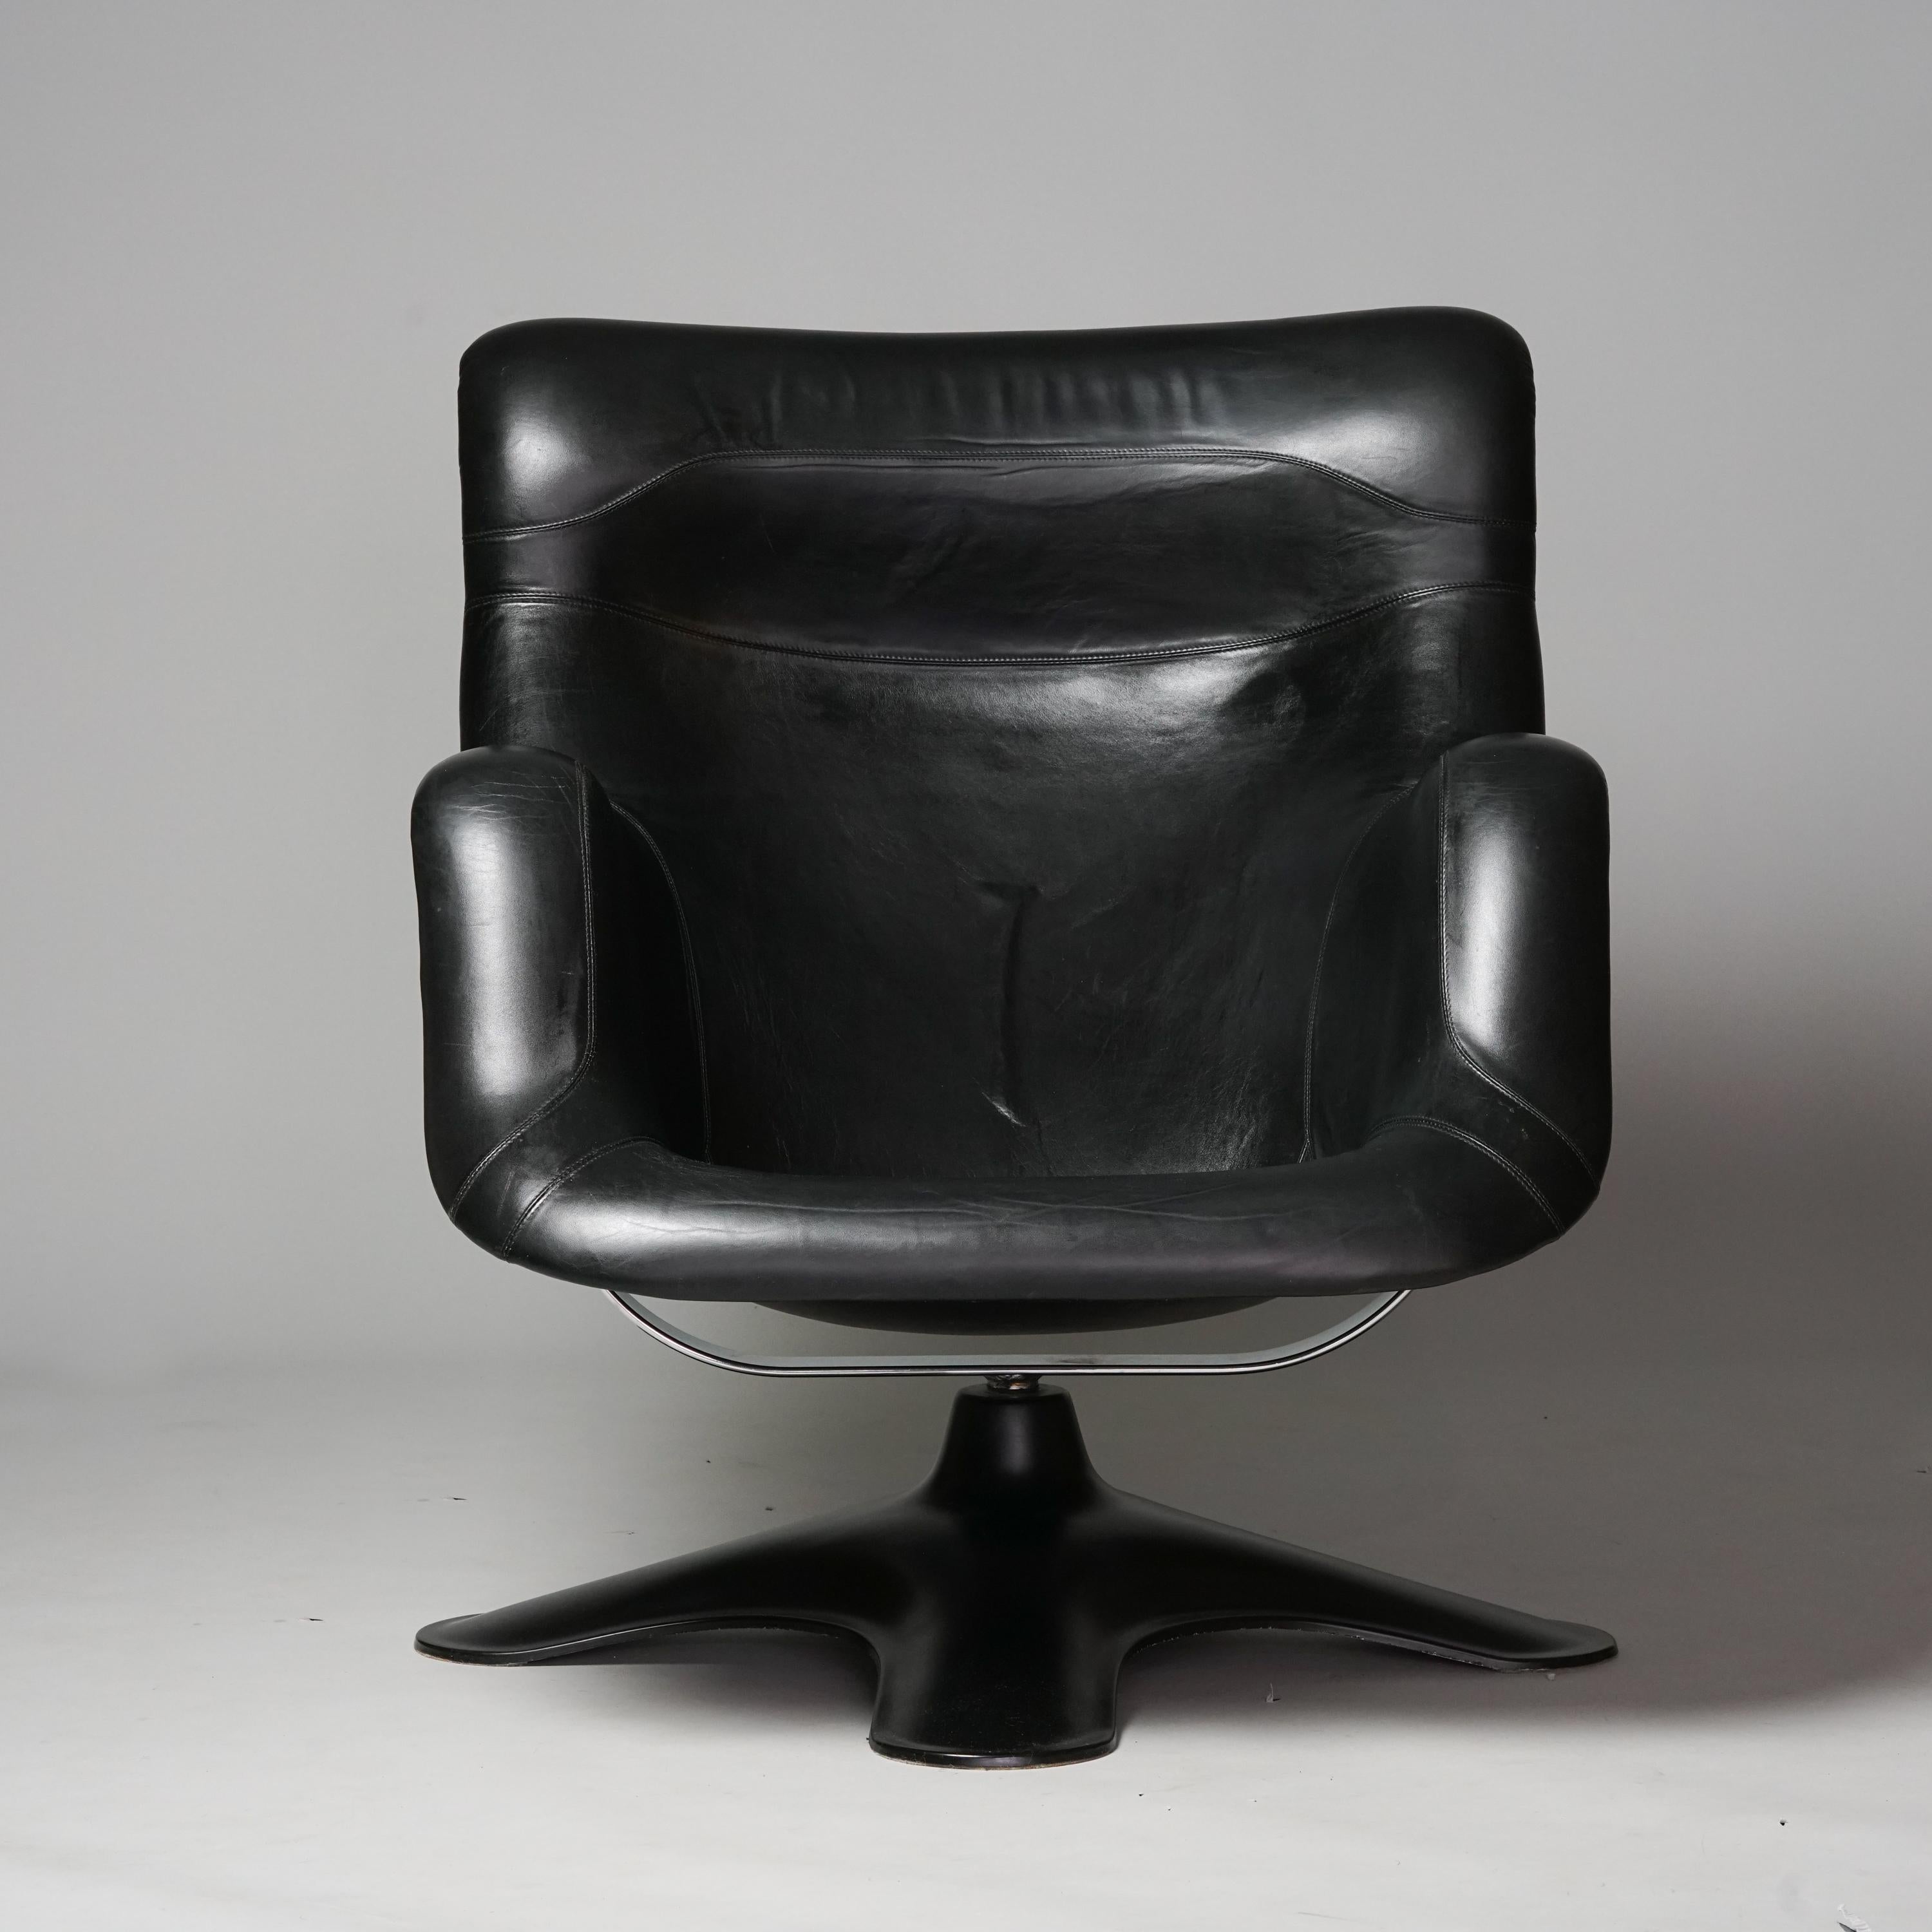 Modell Karuselli (Karussell) Sessel, entworfen von Yrjö Kukkapuro, hergestellt von Haimi Oy, 1970er Jahre. Gestell aus verchromtem Stahl und Glasfaser, Original-Lederpolsterung. Guter Vintage-Zustand, Patina im Einklang mit Alter und Gebrauch.